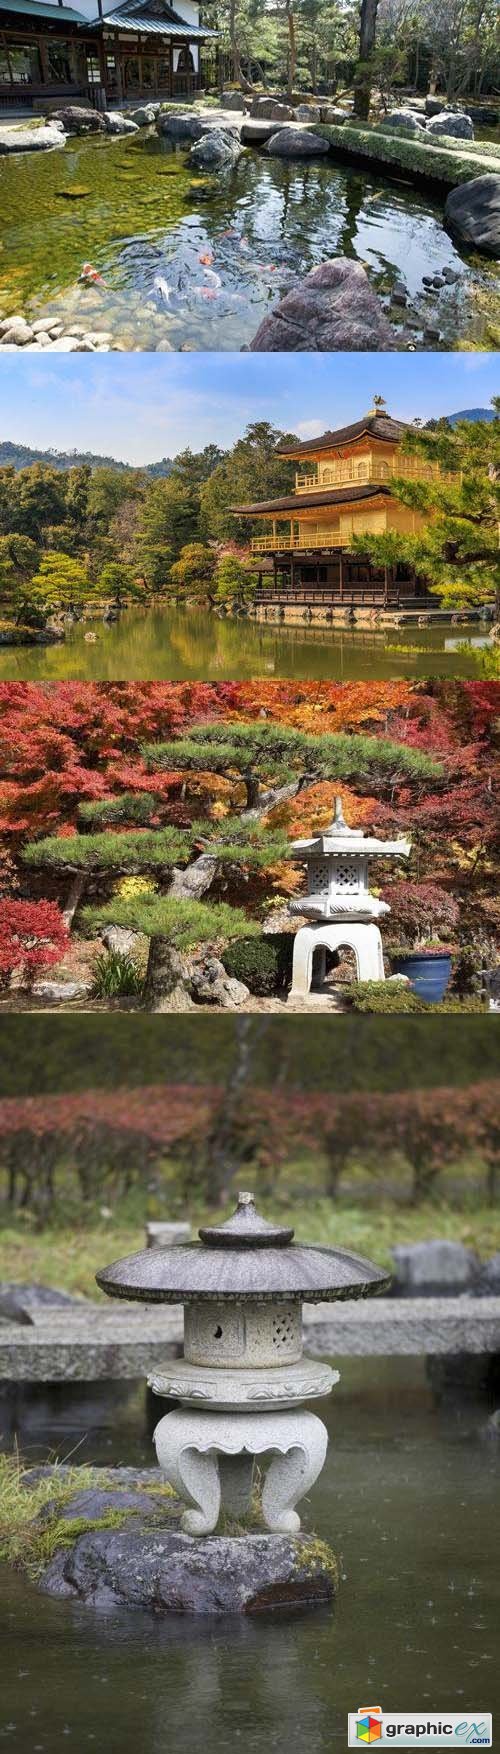 Stock Photos - Japan Garden